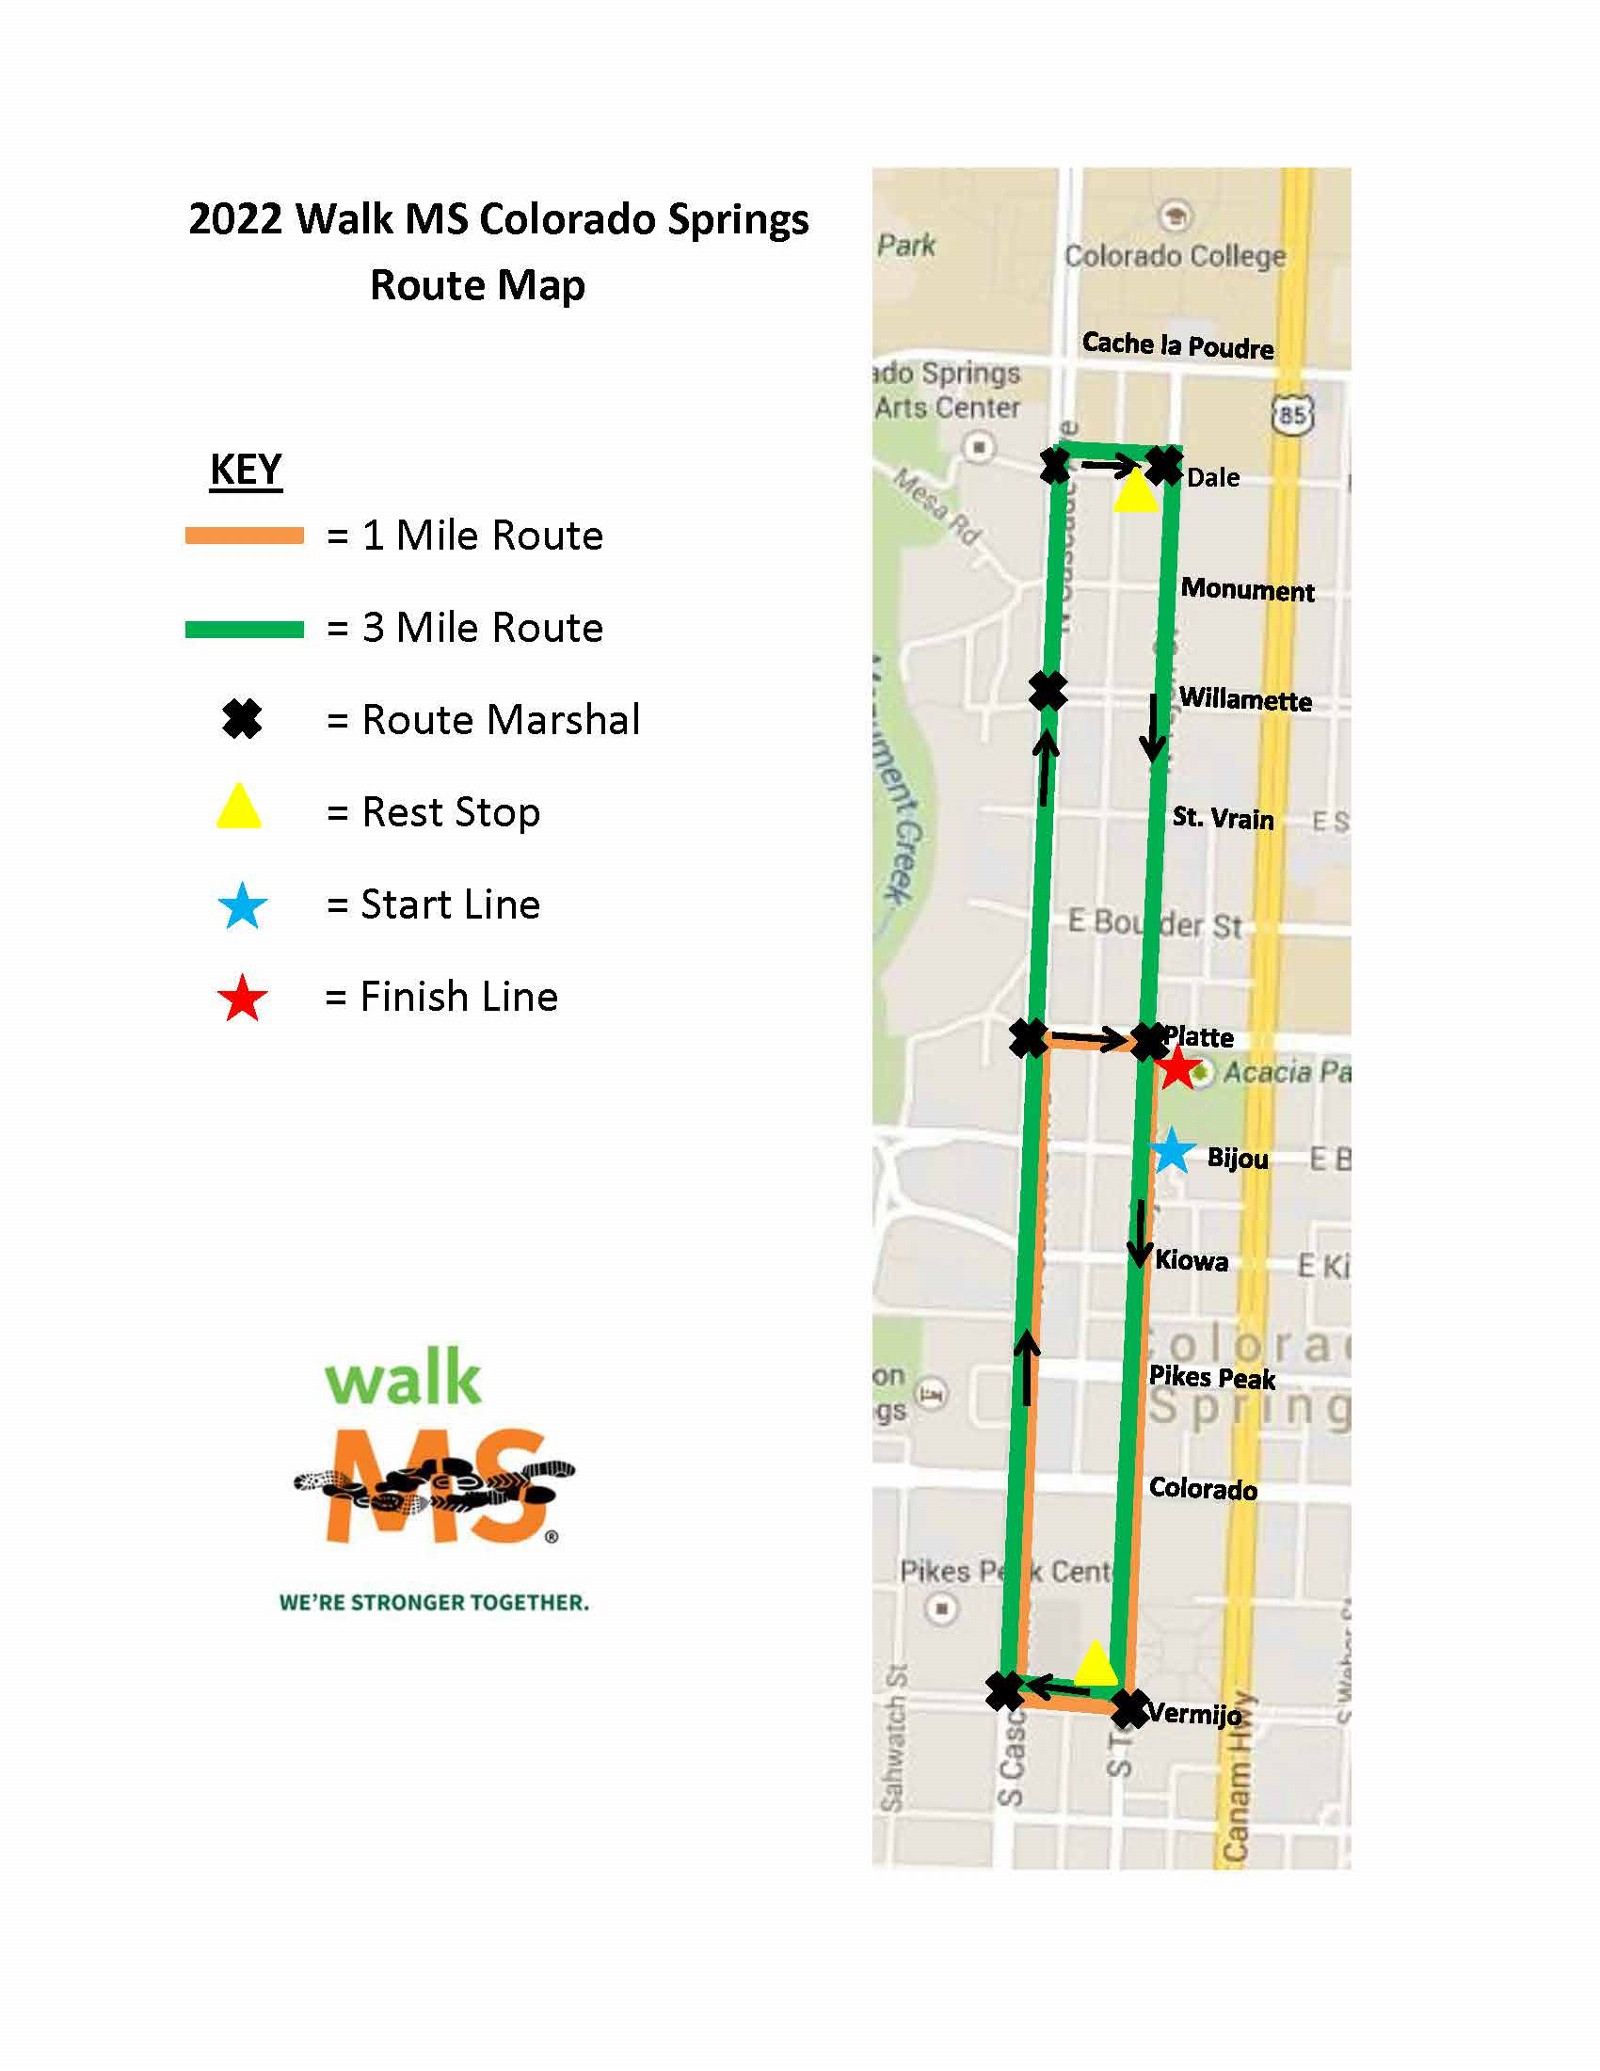 Walk MS: Colorado Springs 2022 route map